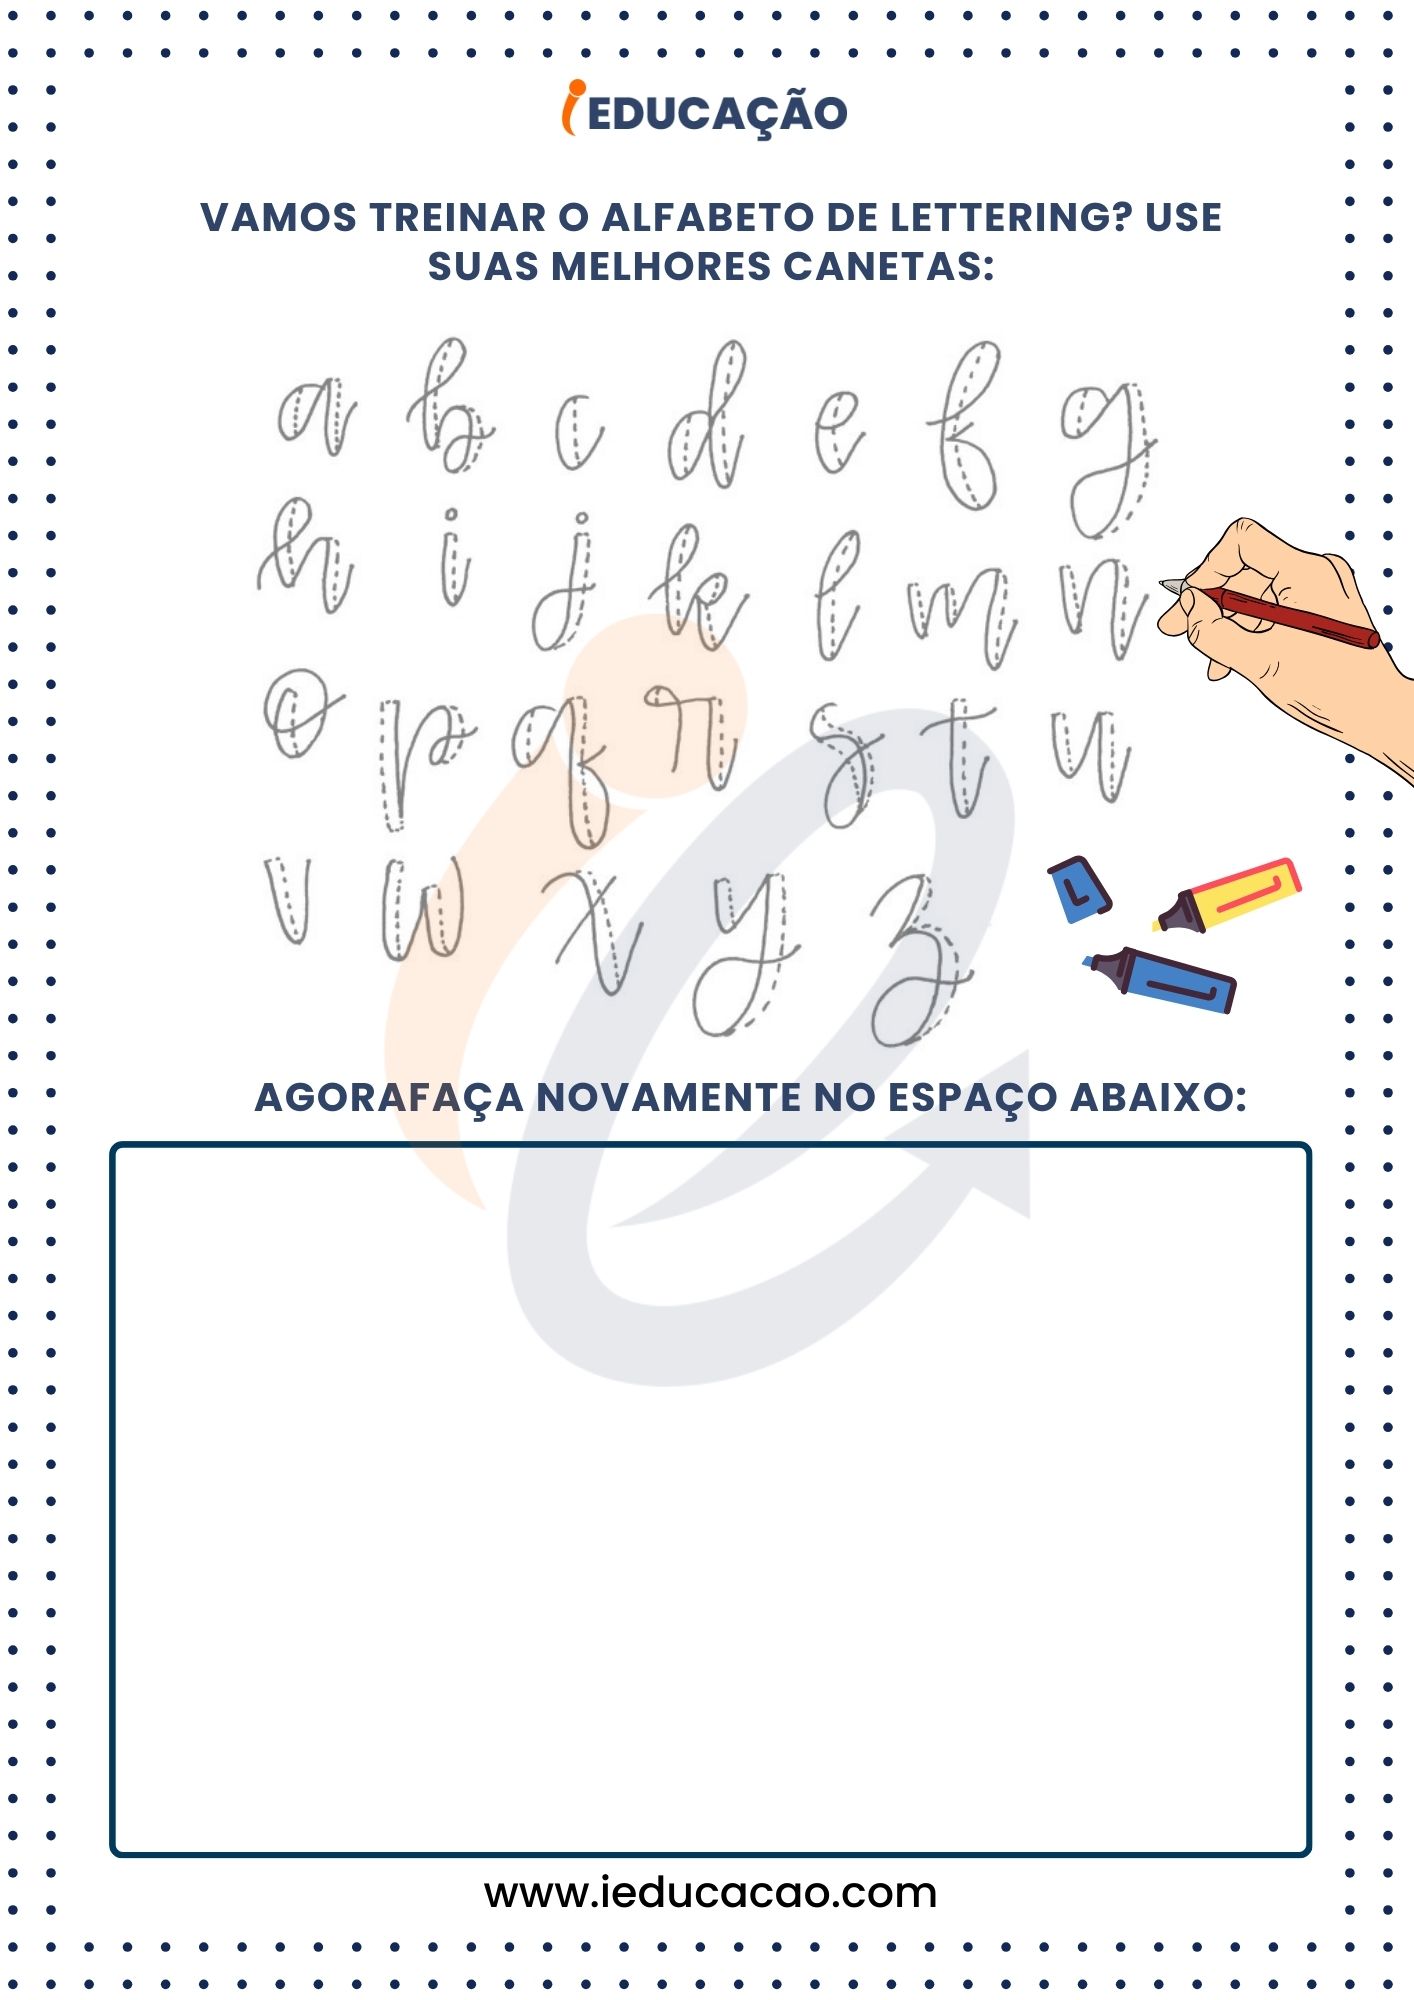 Letras Cursivas para treinar o Alfabeto de Lettering.jpg